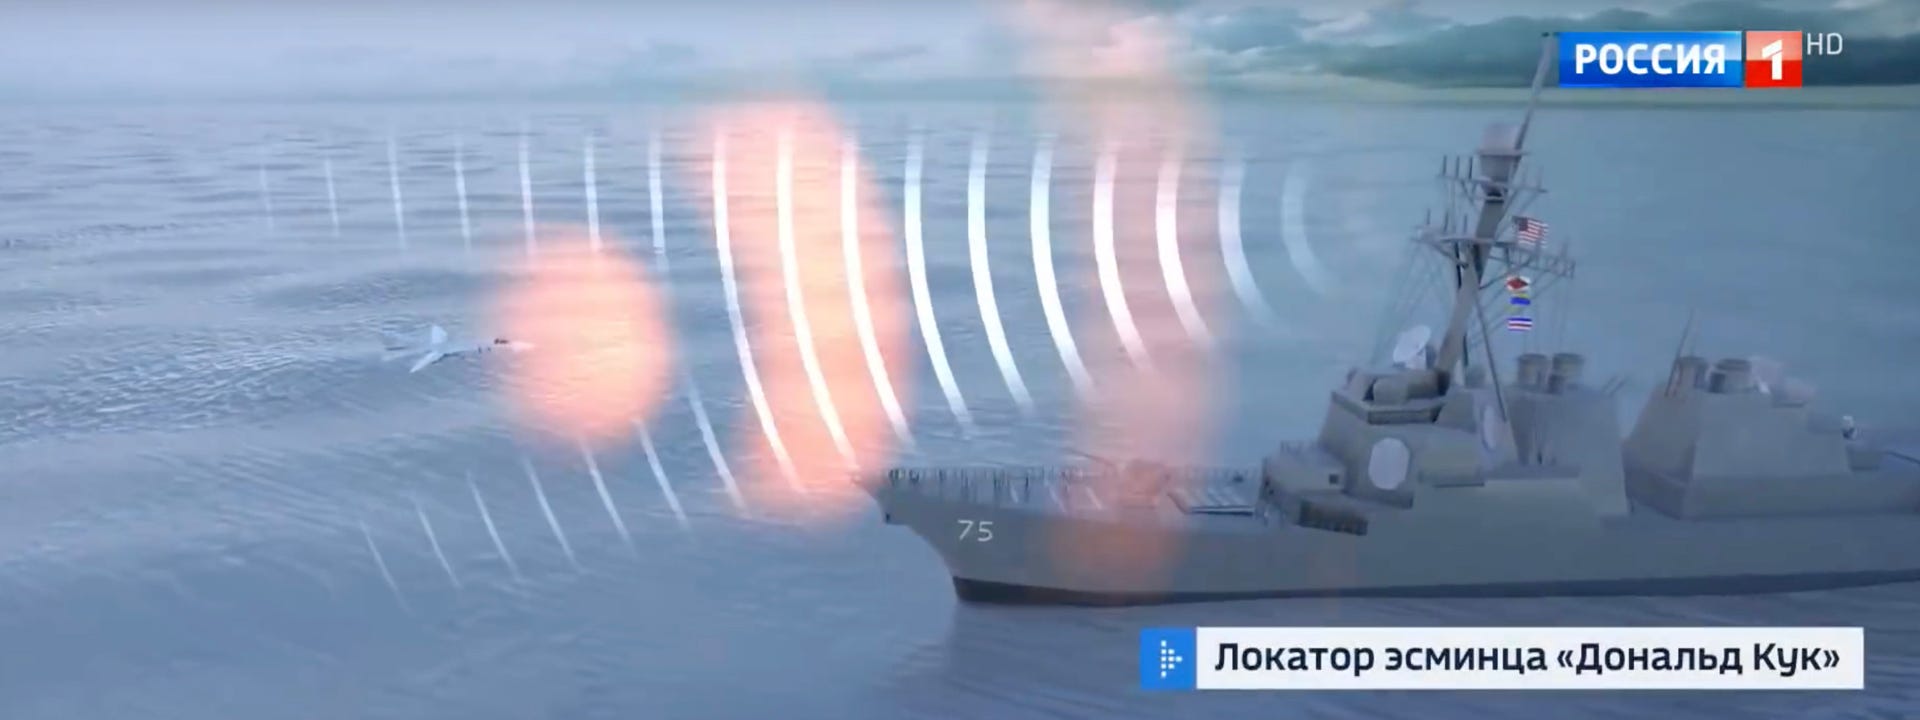 Î‘Ï€Î¿Ï„Î­Î»ÎµÏƒÎ¼Î± ÎµÎ¹ÎºÏŒÎ½Î±Ï‚ Î³Î¹Î± Russia's Electronic Weapons Can Easily Neutralize the U.S. Air Force And Ships